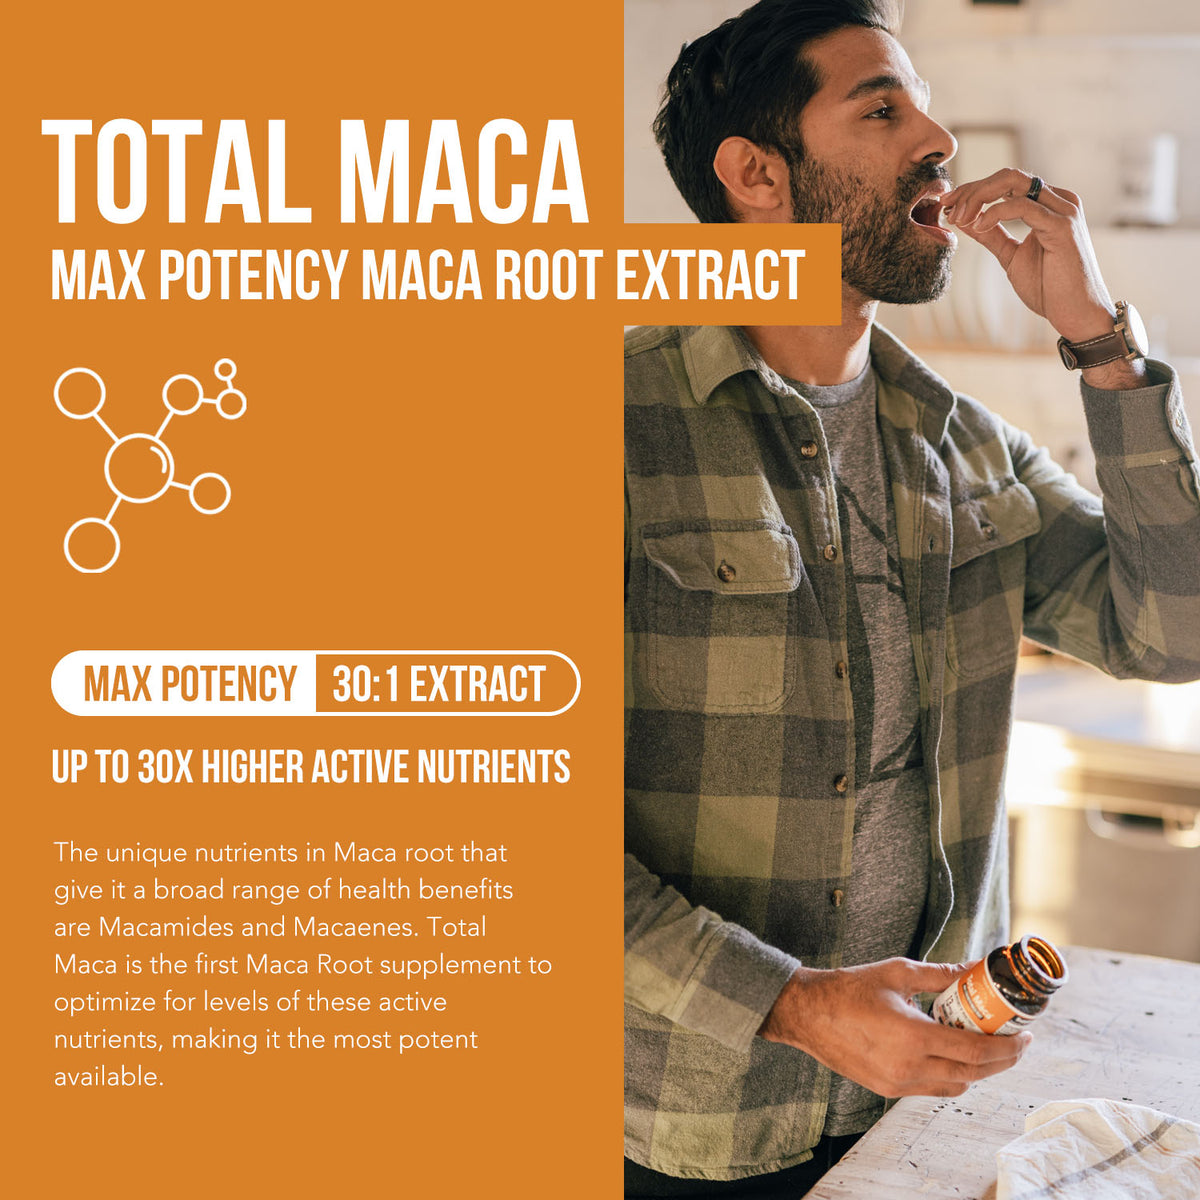 Total Maca: Max Potency Maca Root